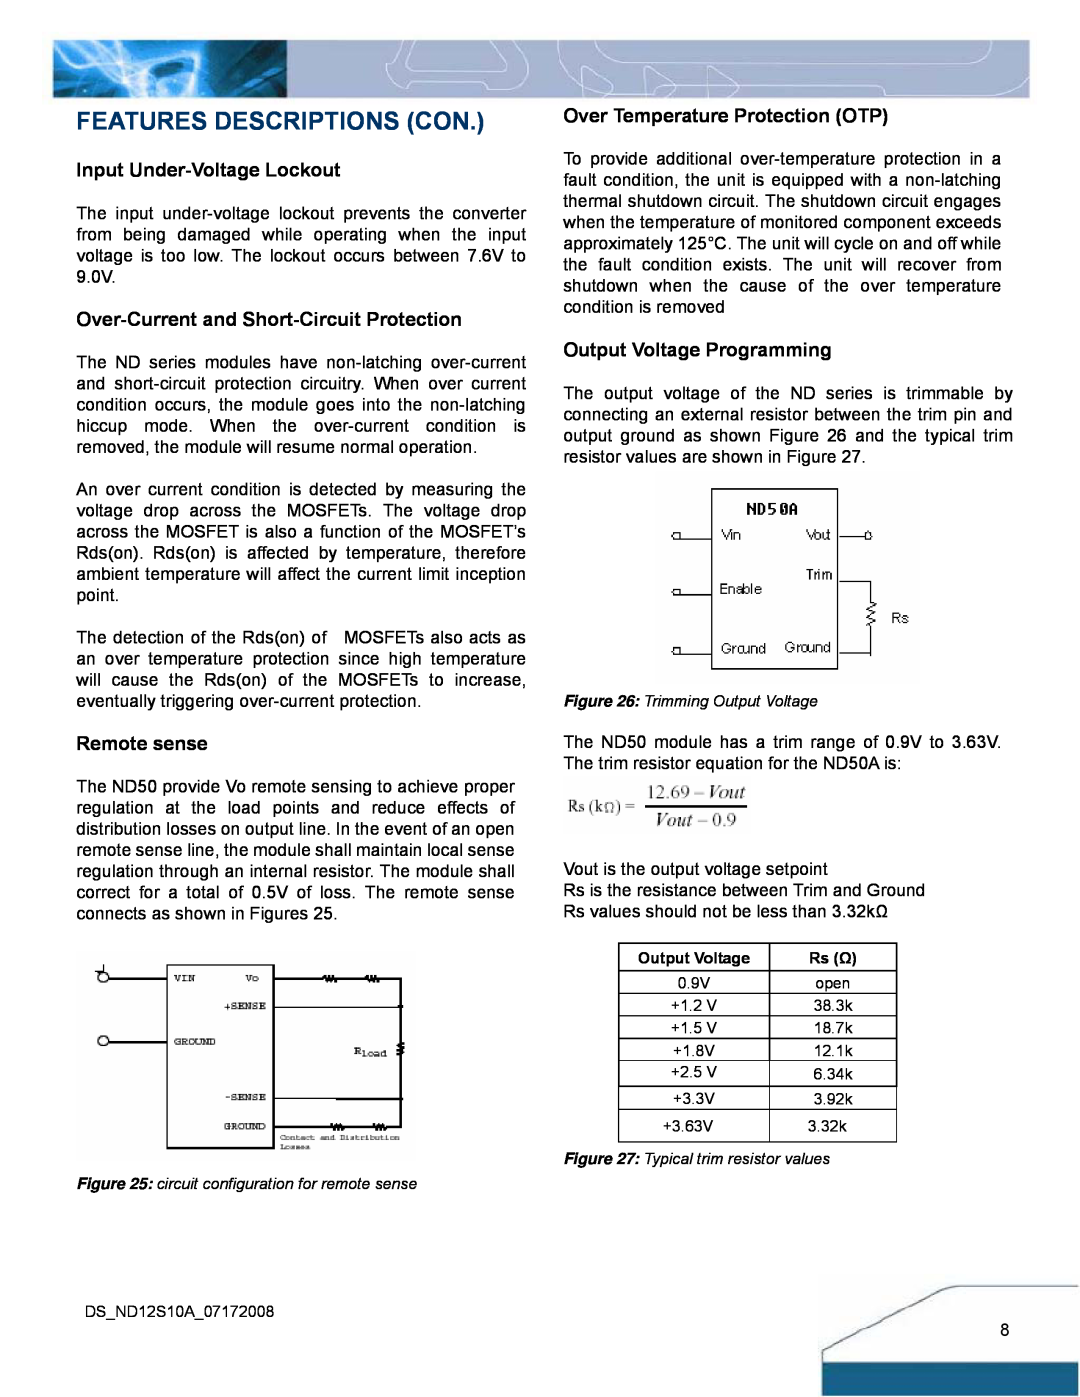 Delta Electronics ND Series manual Features Descriptions Con, Input Under-Voltage Lockout, Remote sense 